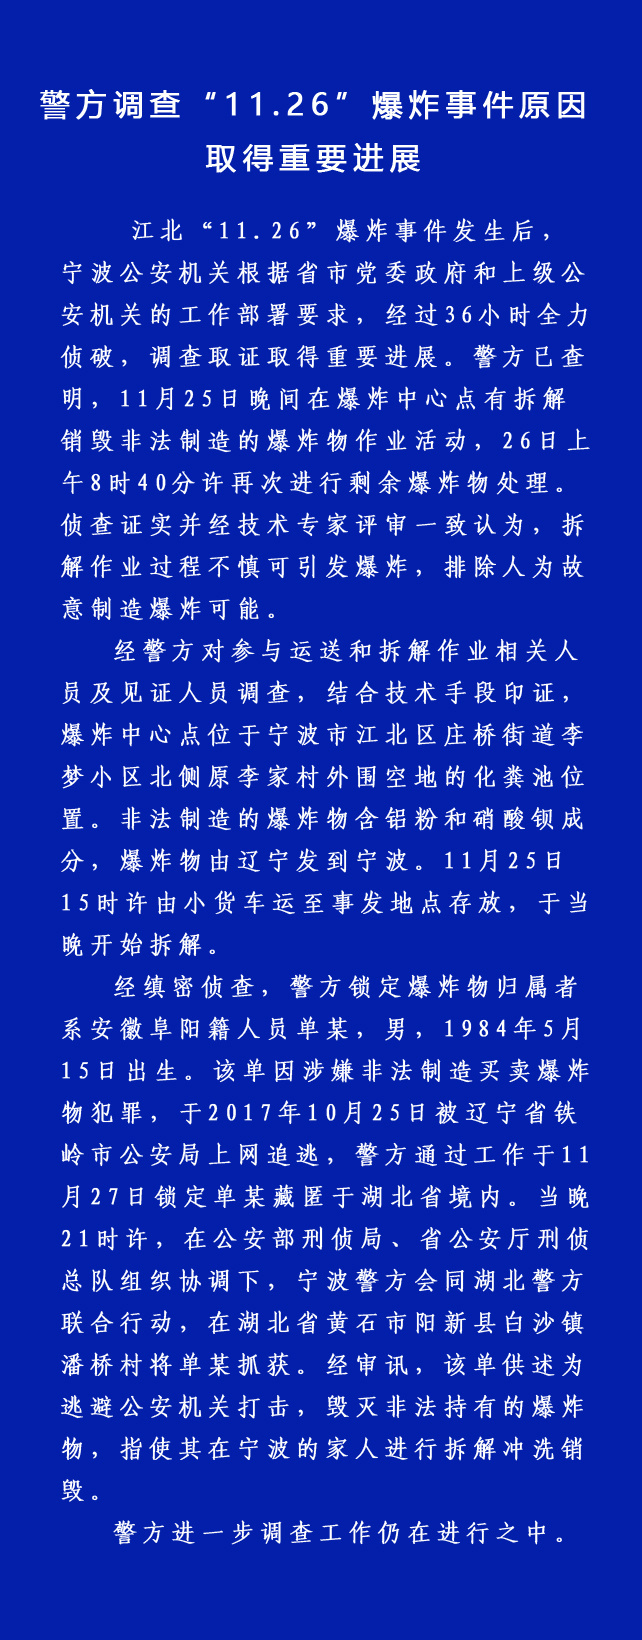 警方通报宁波江北爆炸原因 排除人为故意制造可能